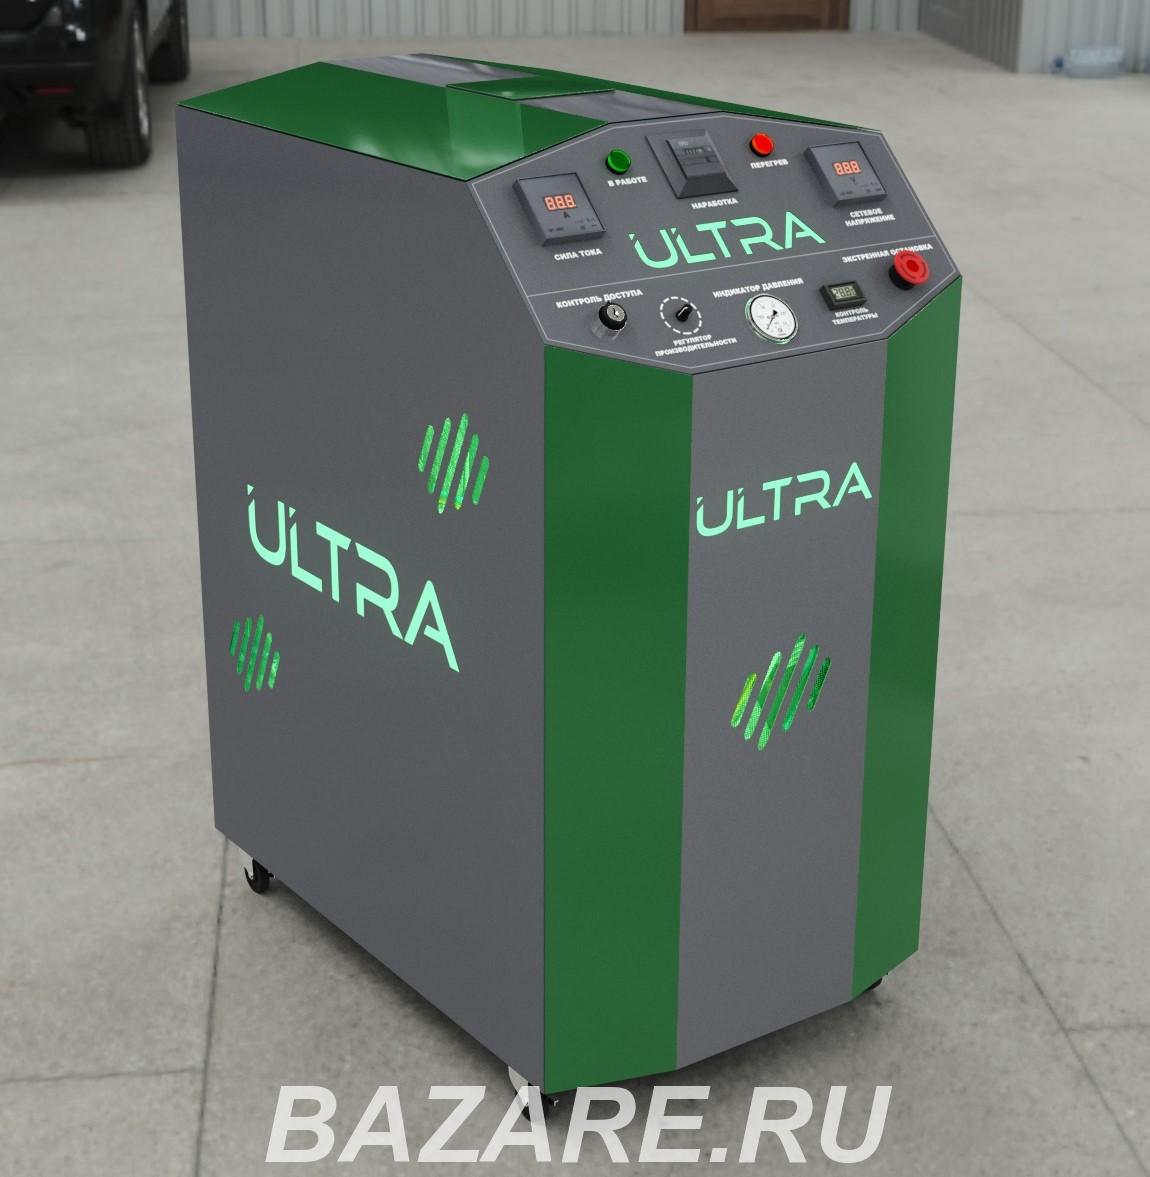 Ultra - оборудование водородной очистки ДВС.,  Омск